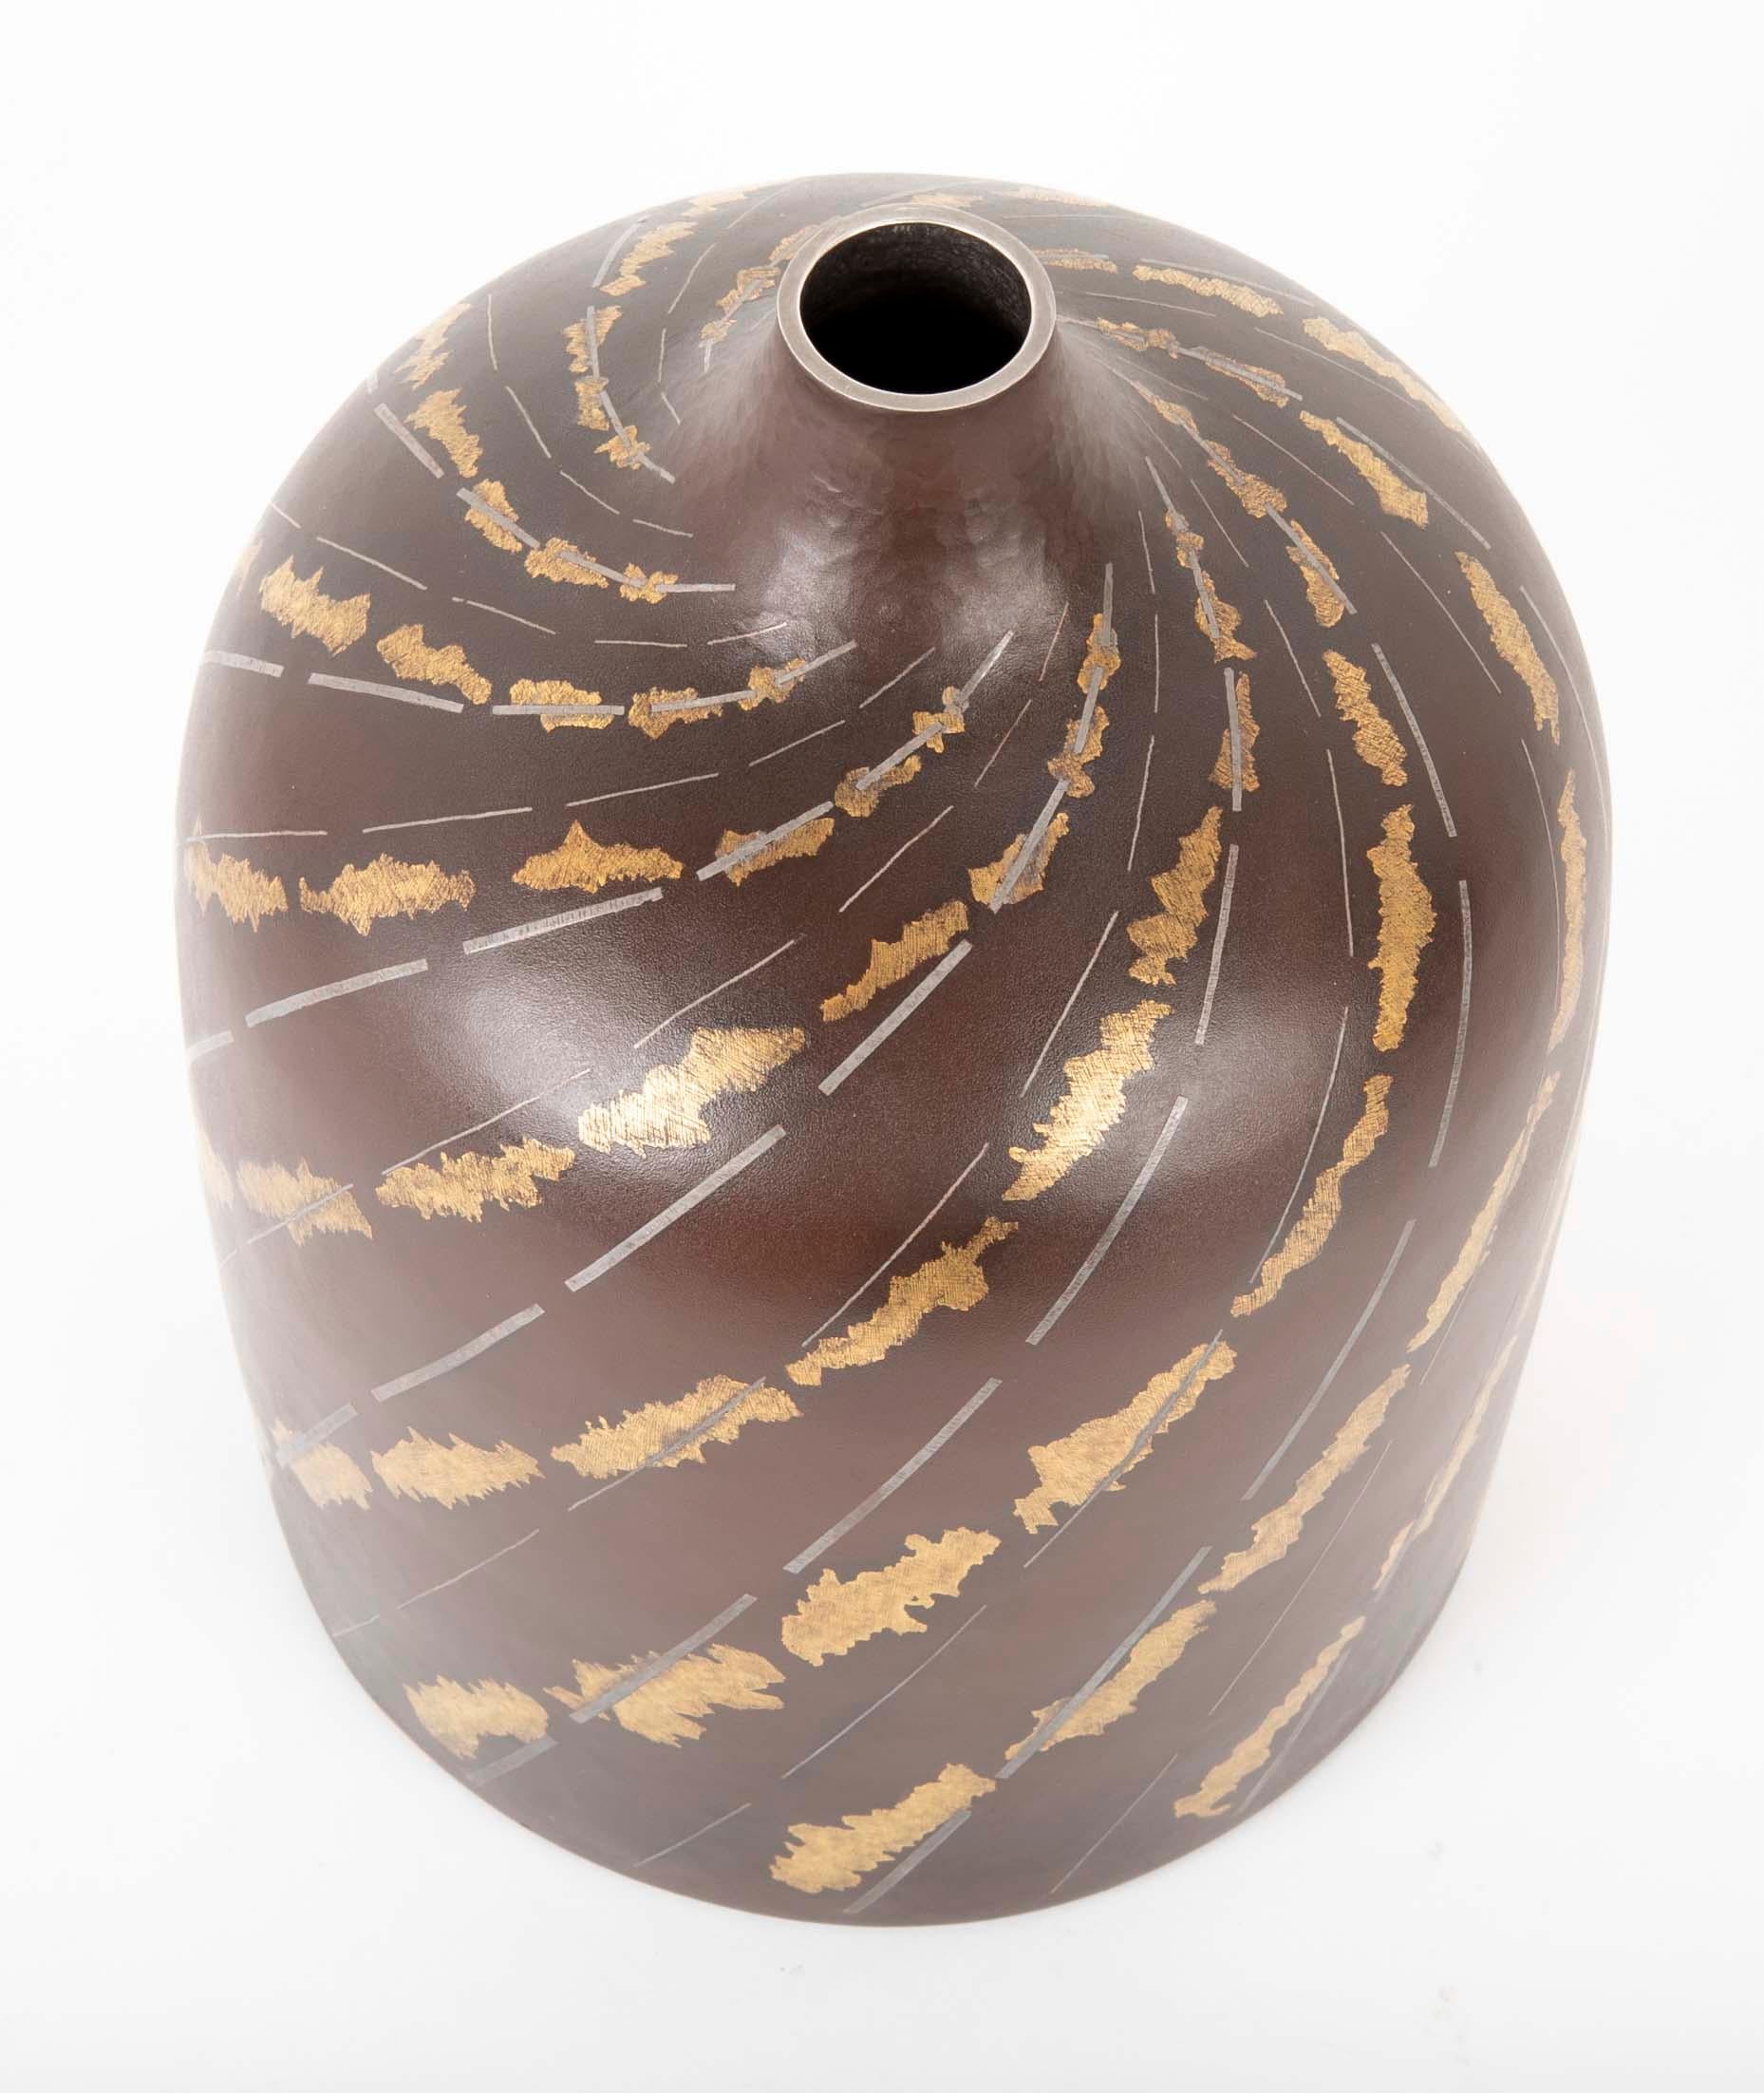 Zylindrische Ikebana-Vase aus Eisen mit silberner und goldener Spirale, die einen Bach darstellt. Die Vase wurde von Ueda Hiroshi hergestellt und ist mit Hiroshi signiert. Die Schachtel wird mit ihrer originalen Tomobako (Aufbewahrungsbox) geliefert